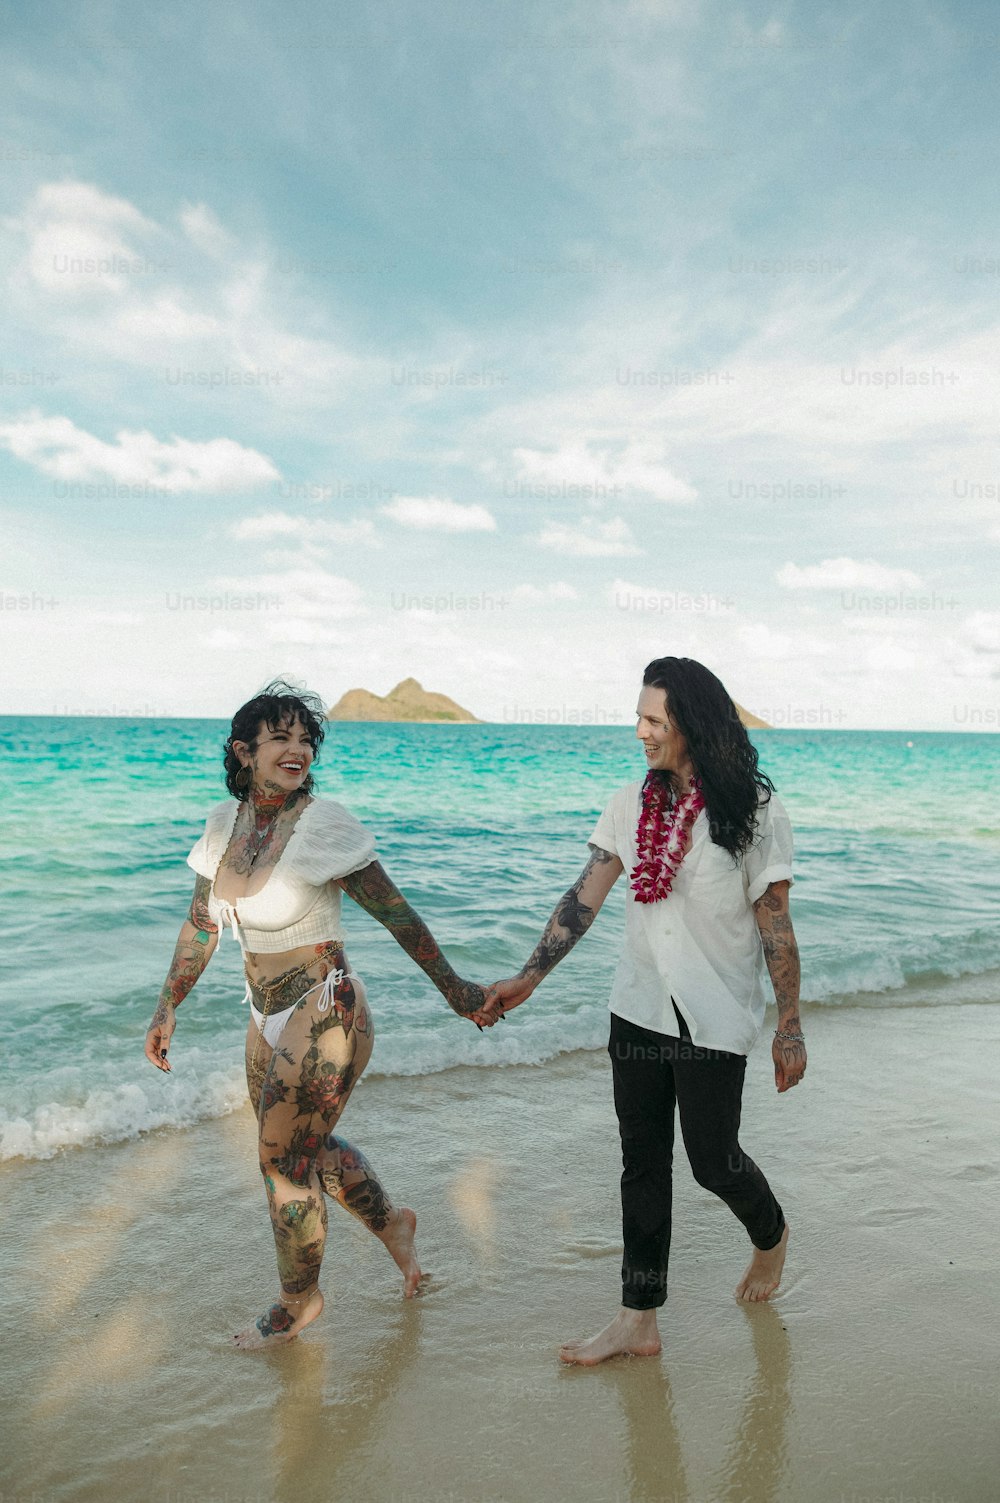 해변을 걷는 동안 손을 잡고 있는 두 여자